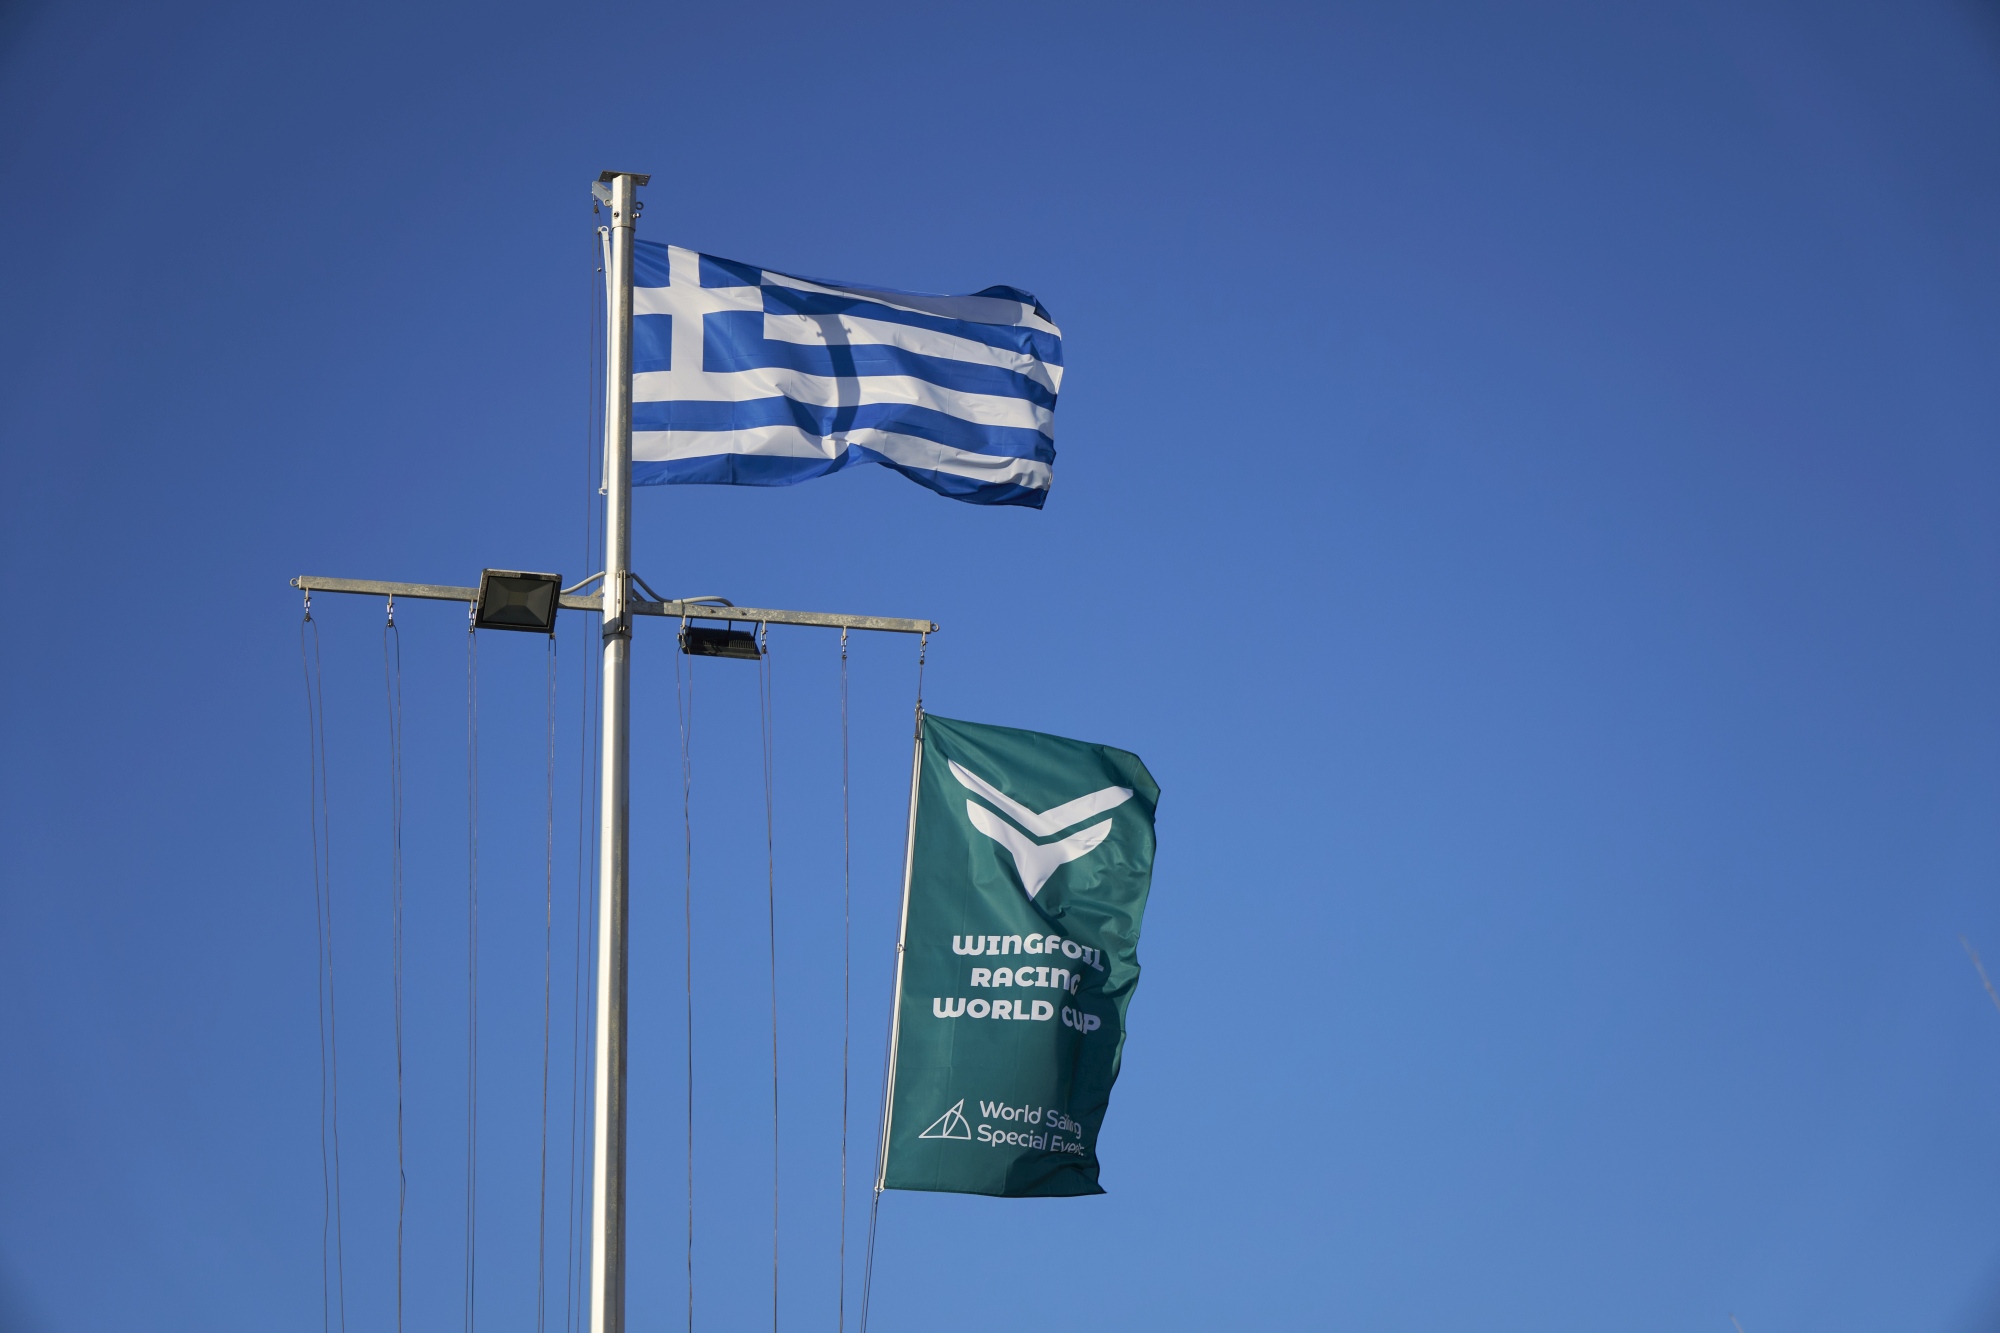 Bandiera greca alla gara di wingfoil